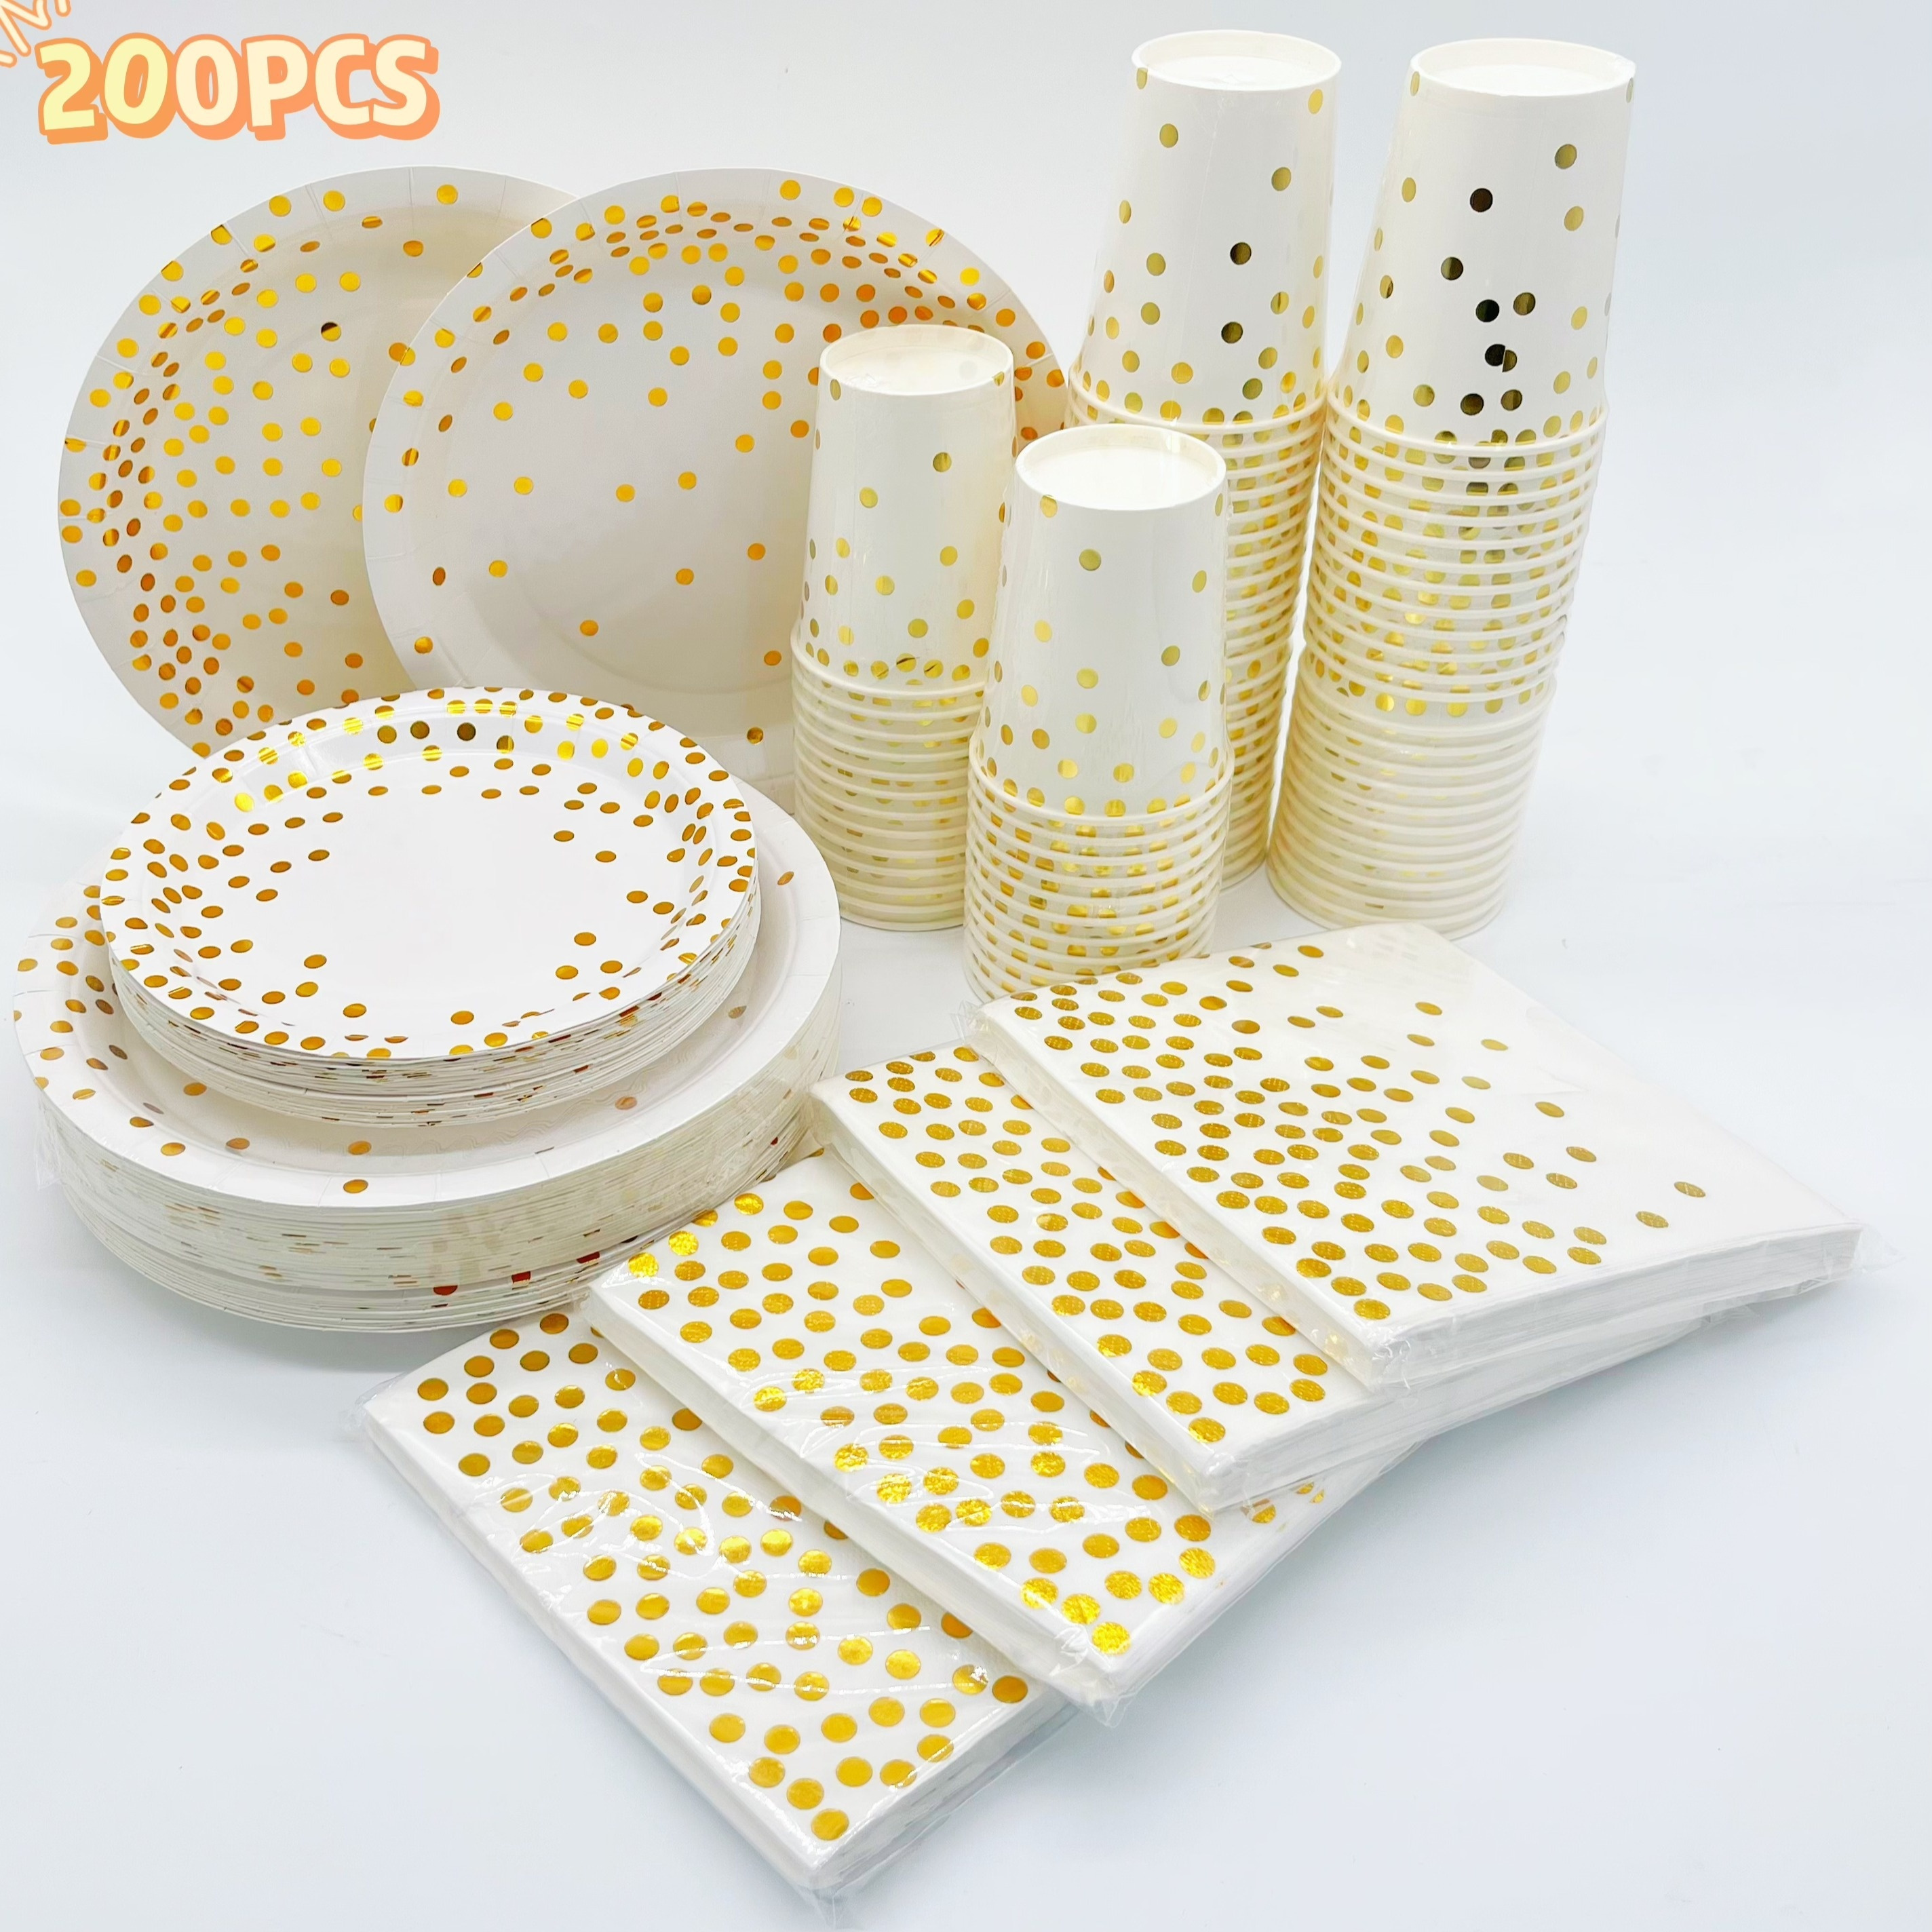 Platos llanos blancos 162 piezas – Platos desechables para fiestas – Platos  de plástico resistentes para recepción de boda – Platos de boda de diseño